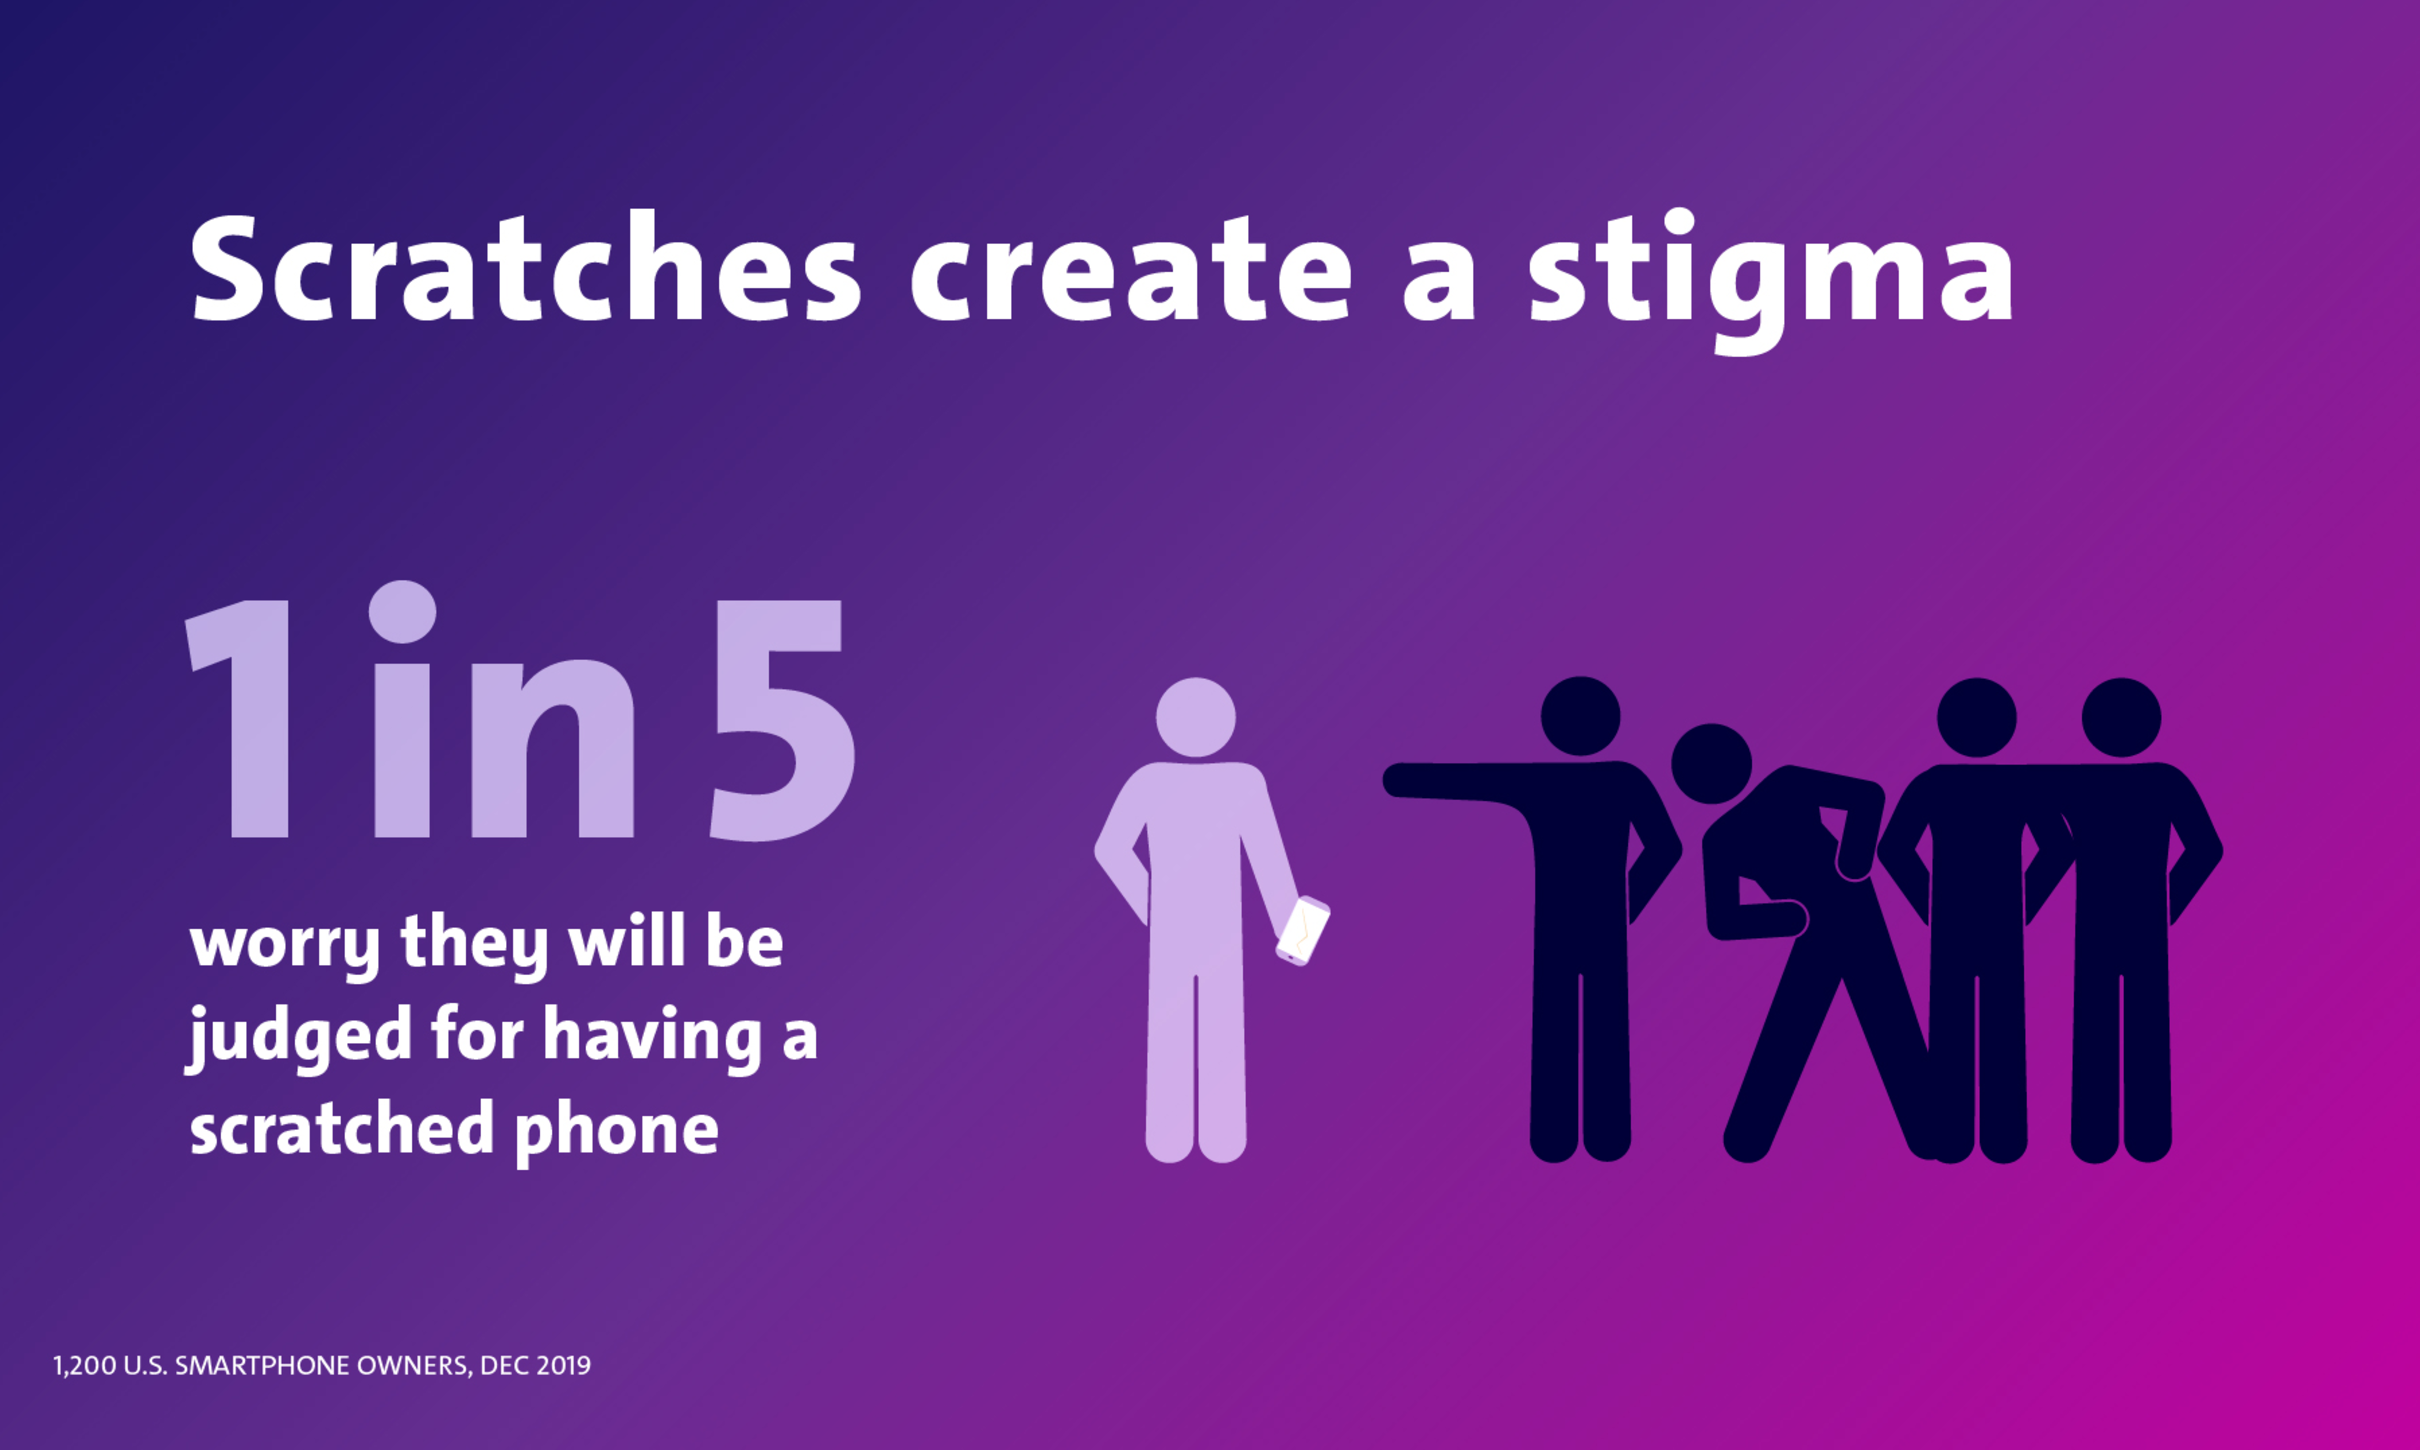 Scratches create a stigma